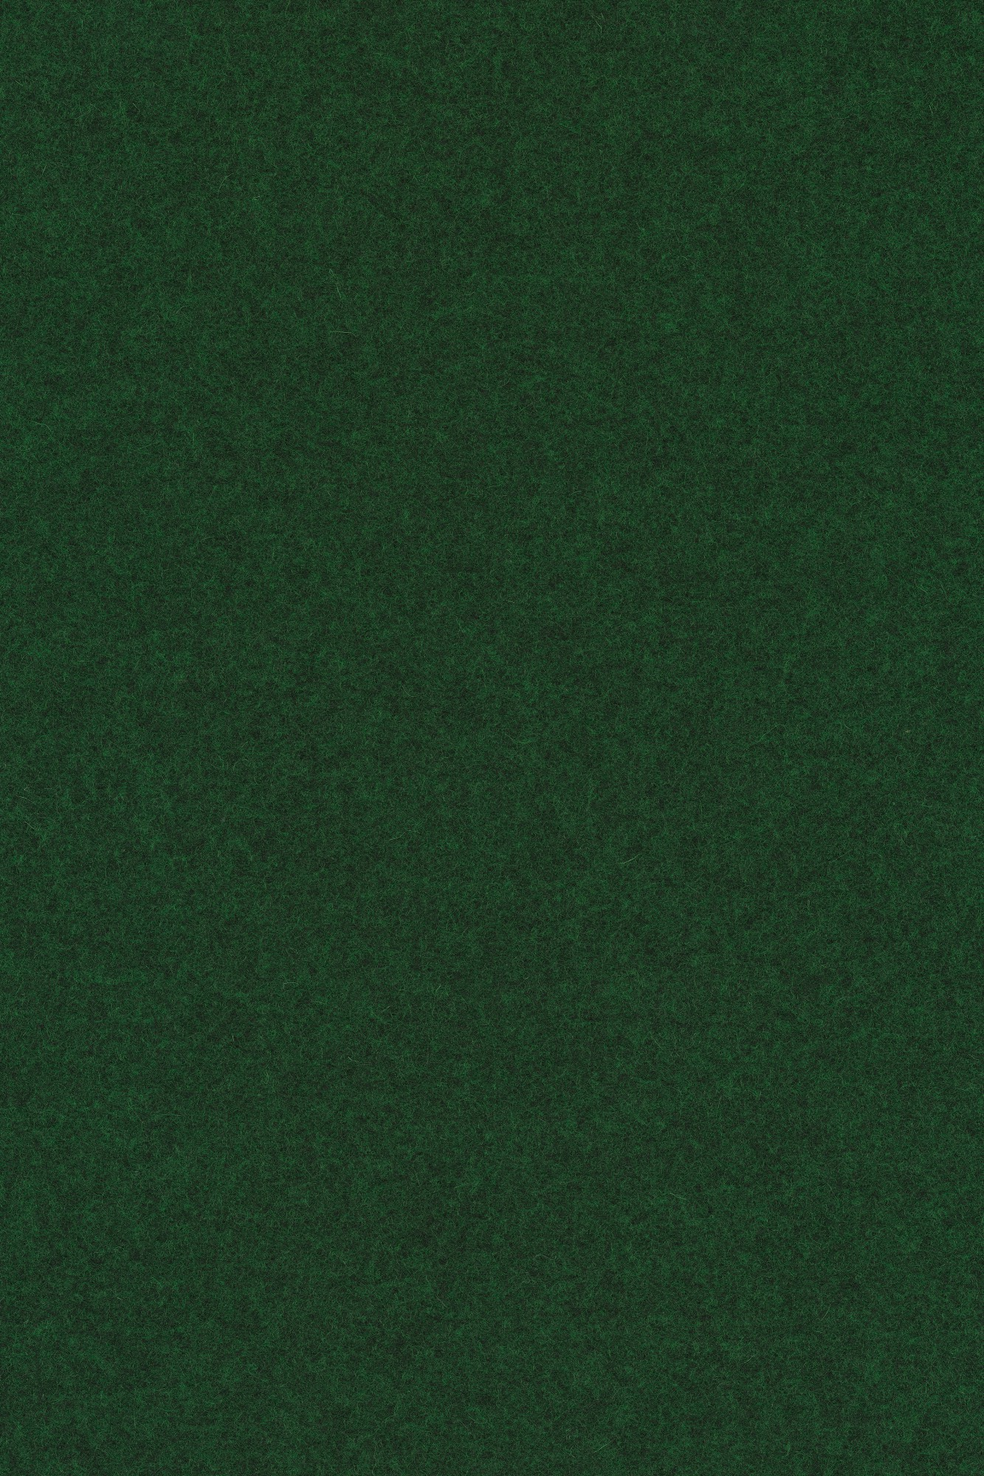 Fabric sample Divina Melange 3 977 green